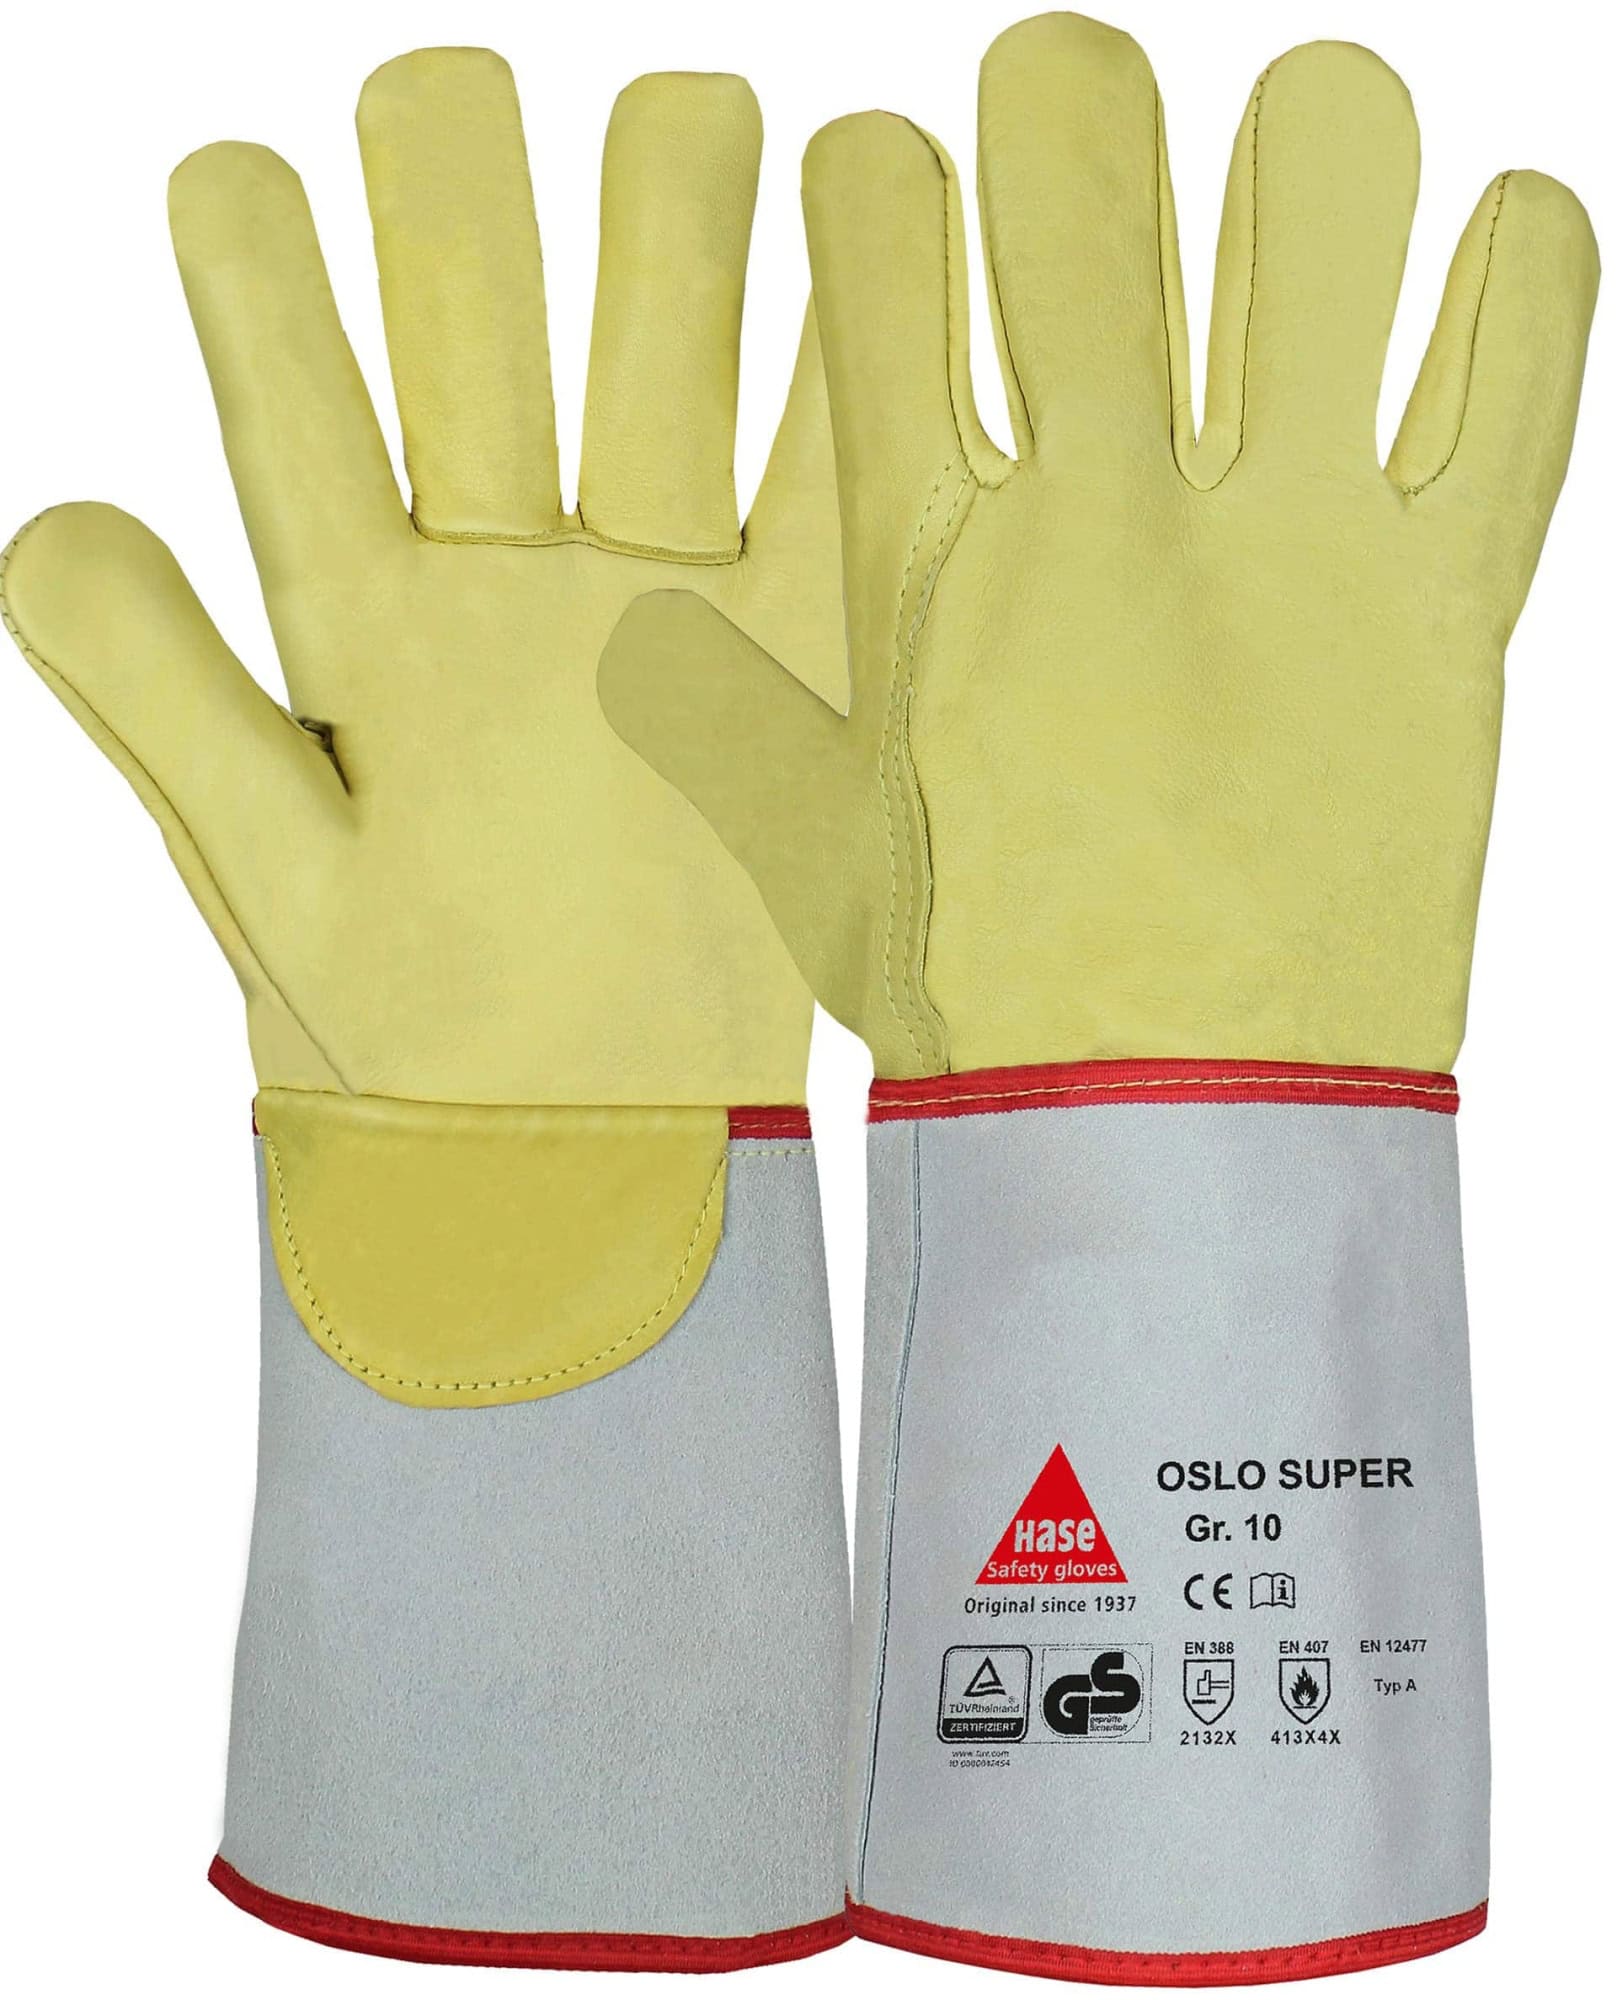 Hase Safety Gloves® OSLO SUPER 105100-12, Größe 12, Typ A, Kat. II, Natur/Gelb, Schweißerhandschuh für schwere Schweißarbeiten